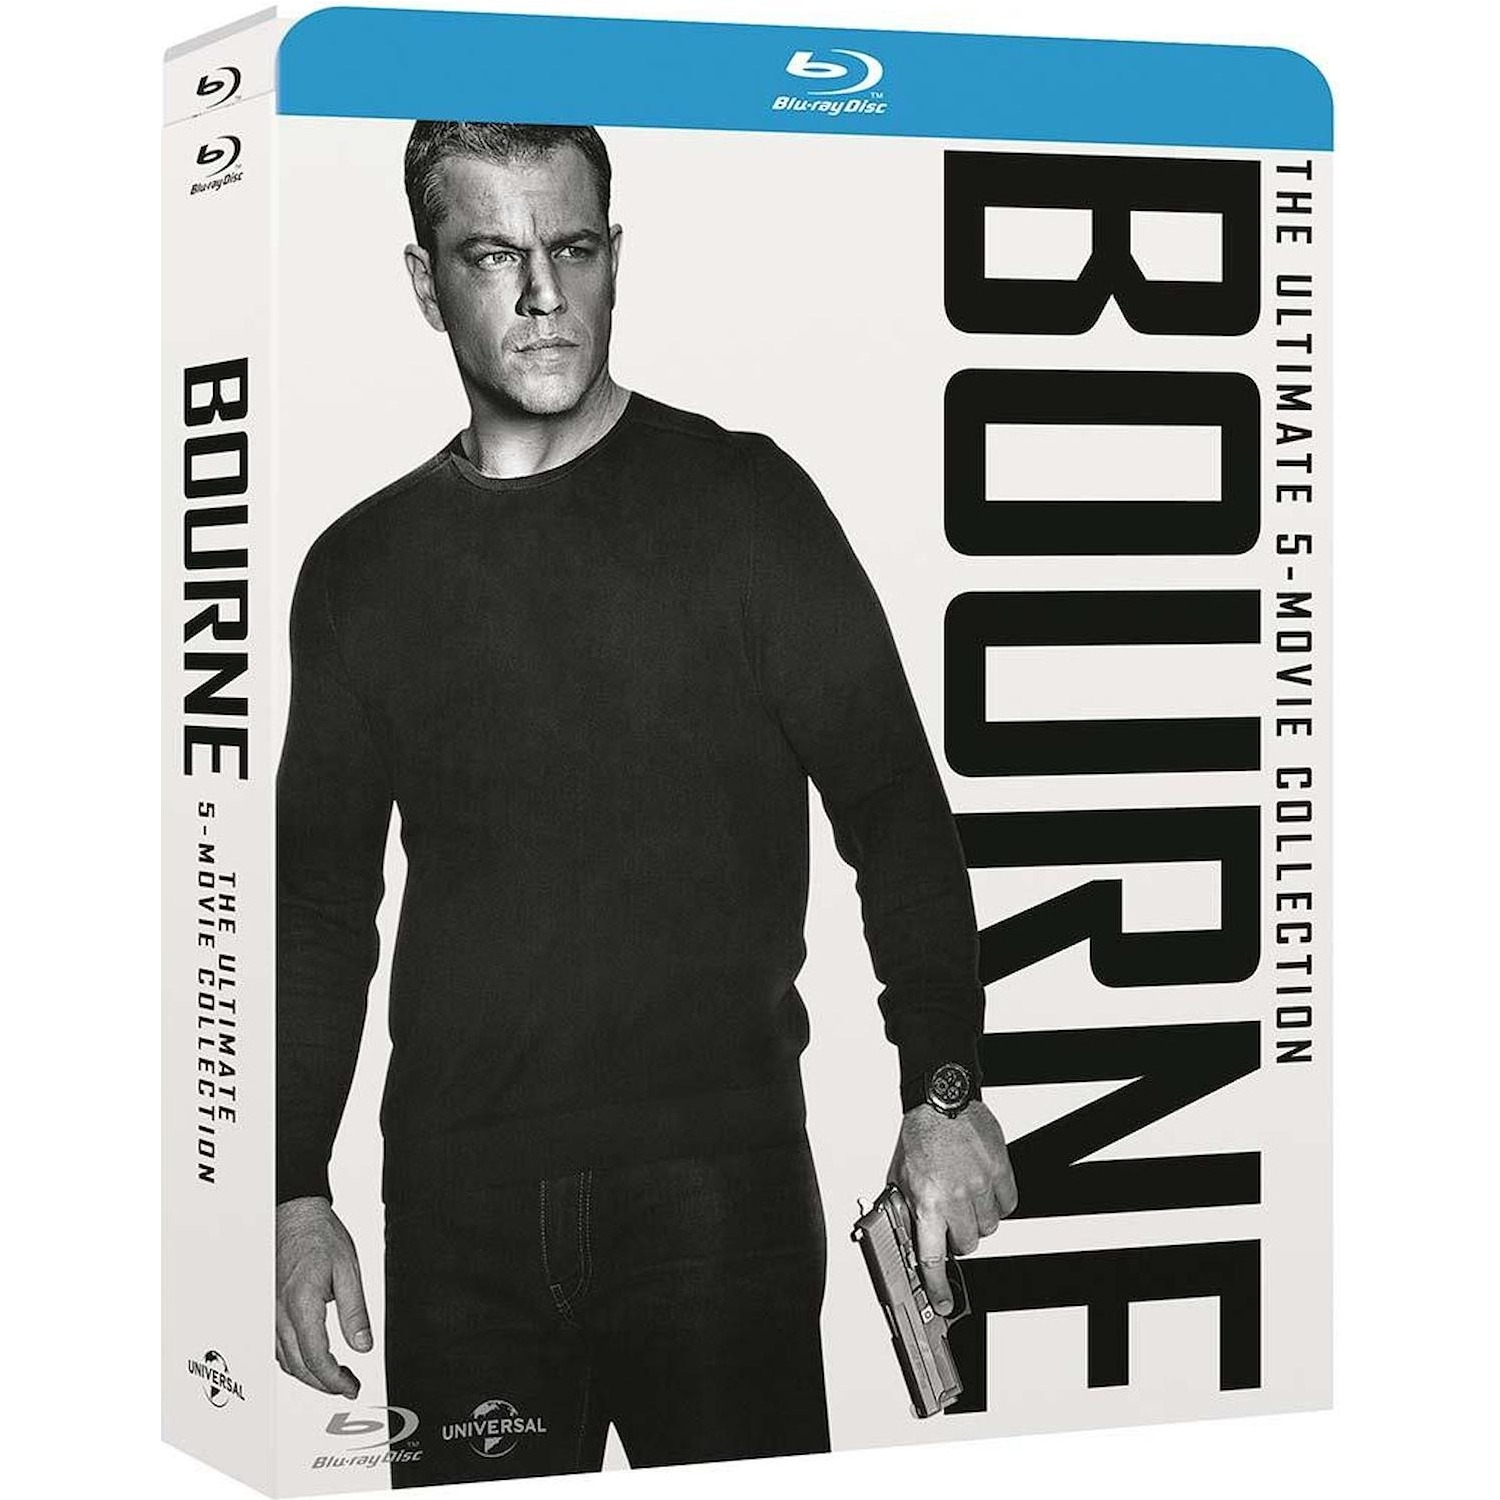 Immagine per Cofanetto Blu-ray Bourne 5 movie collection da DIMOStore